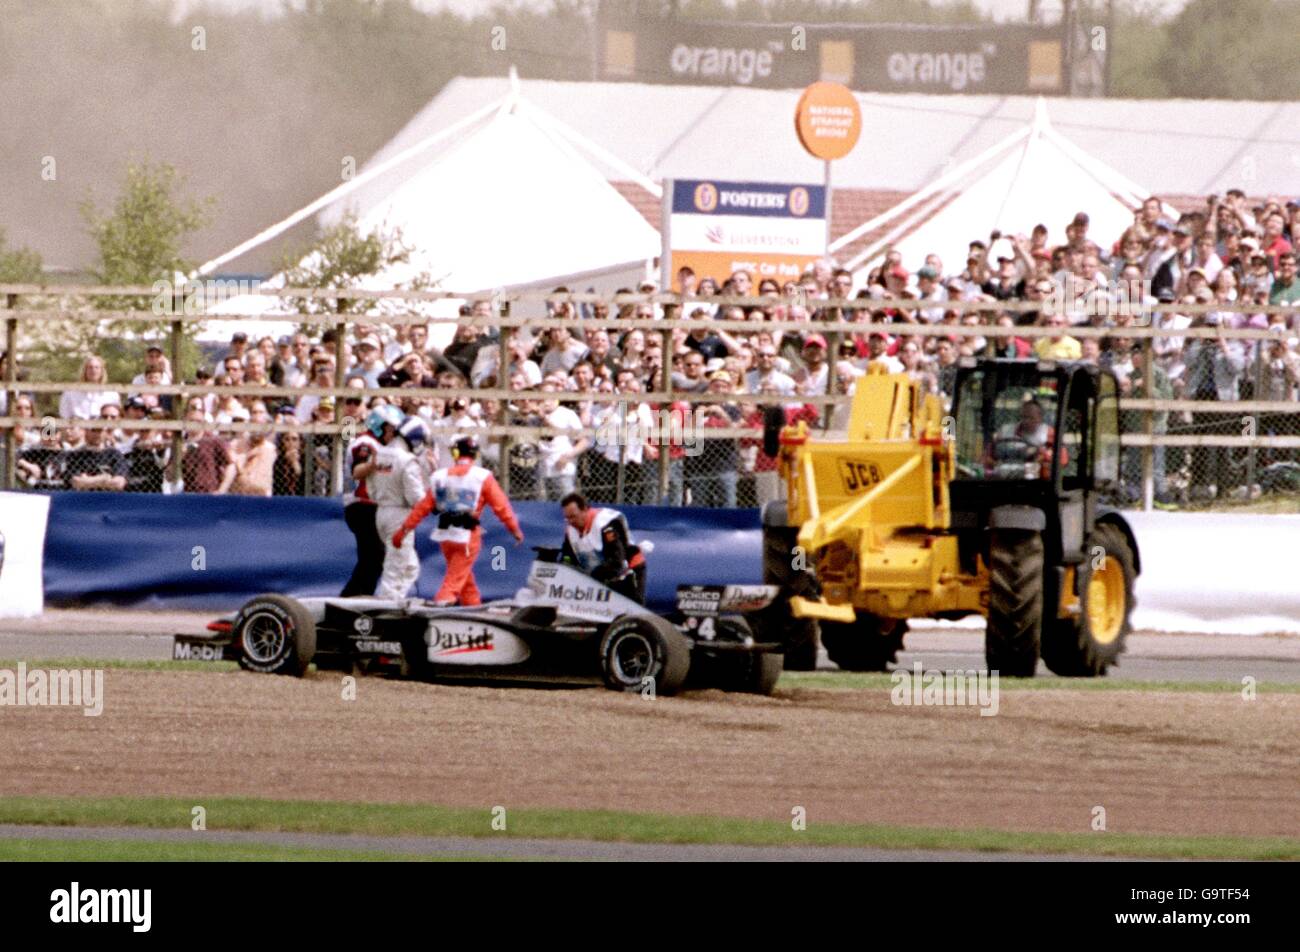 David Coulthard wird von Marschalls geführt, nachdem er mit Jordans Jarno Trulli kollidierte, was dazu führte, dass er aus dem Rennen auszog. Stockfoto